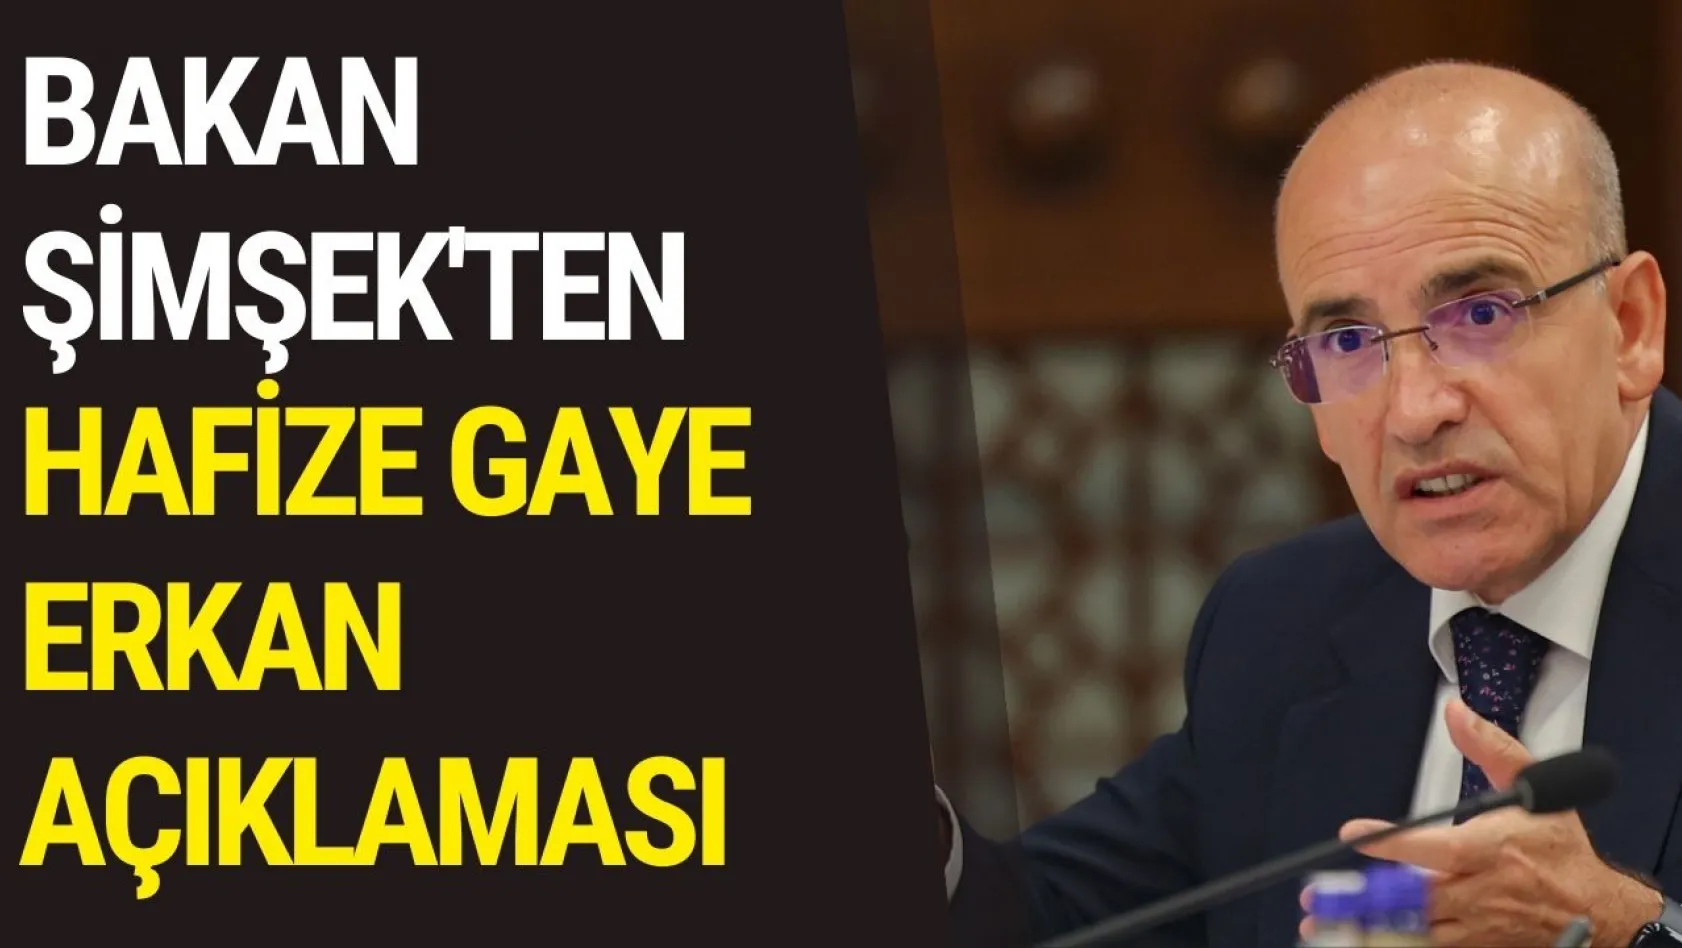 Bakan Şimşek'ten Hafize Gaye Erkan açıklaması